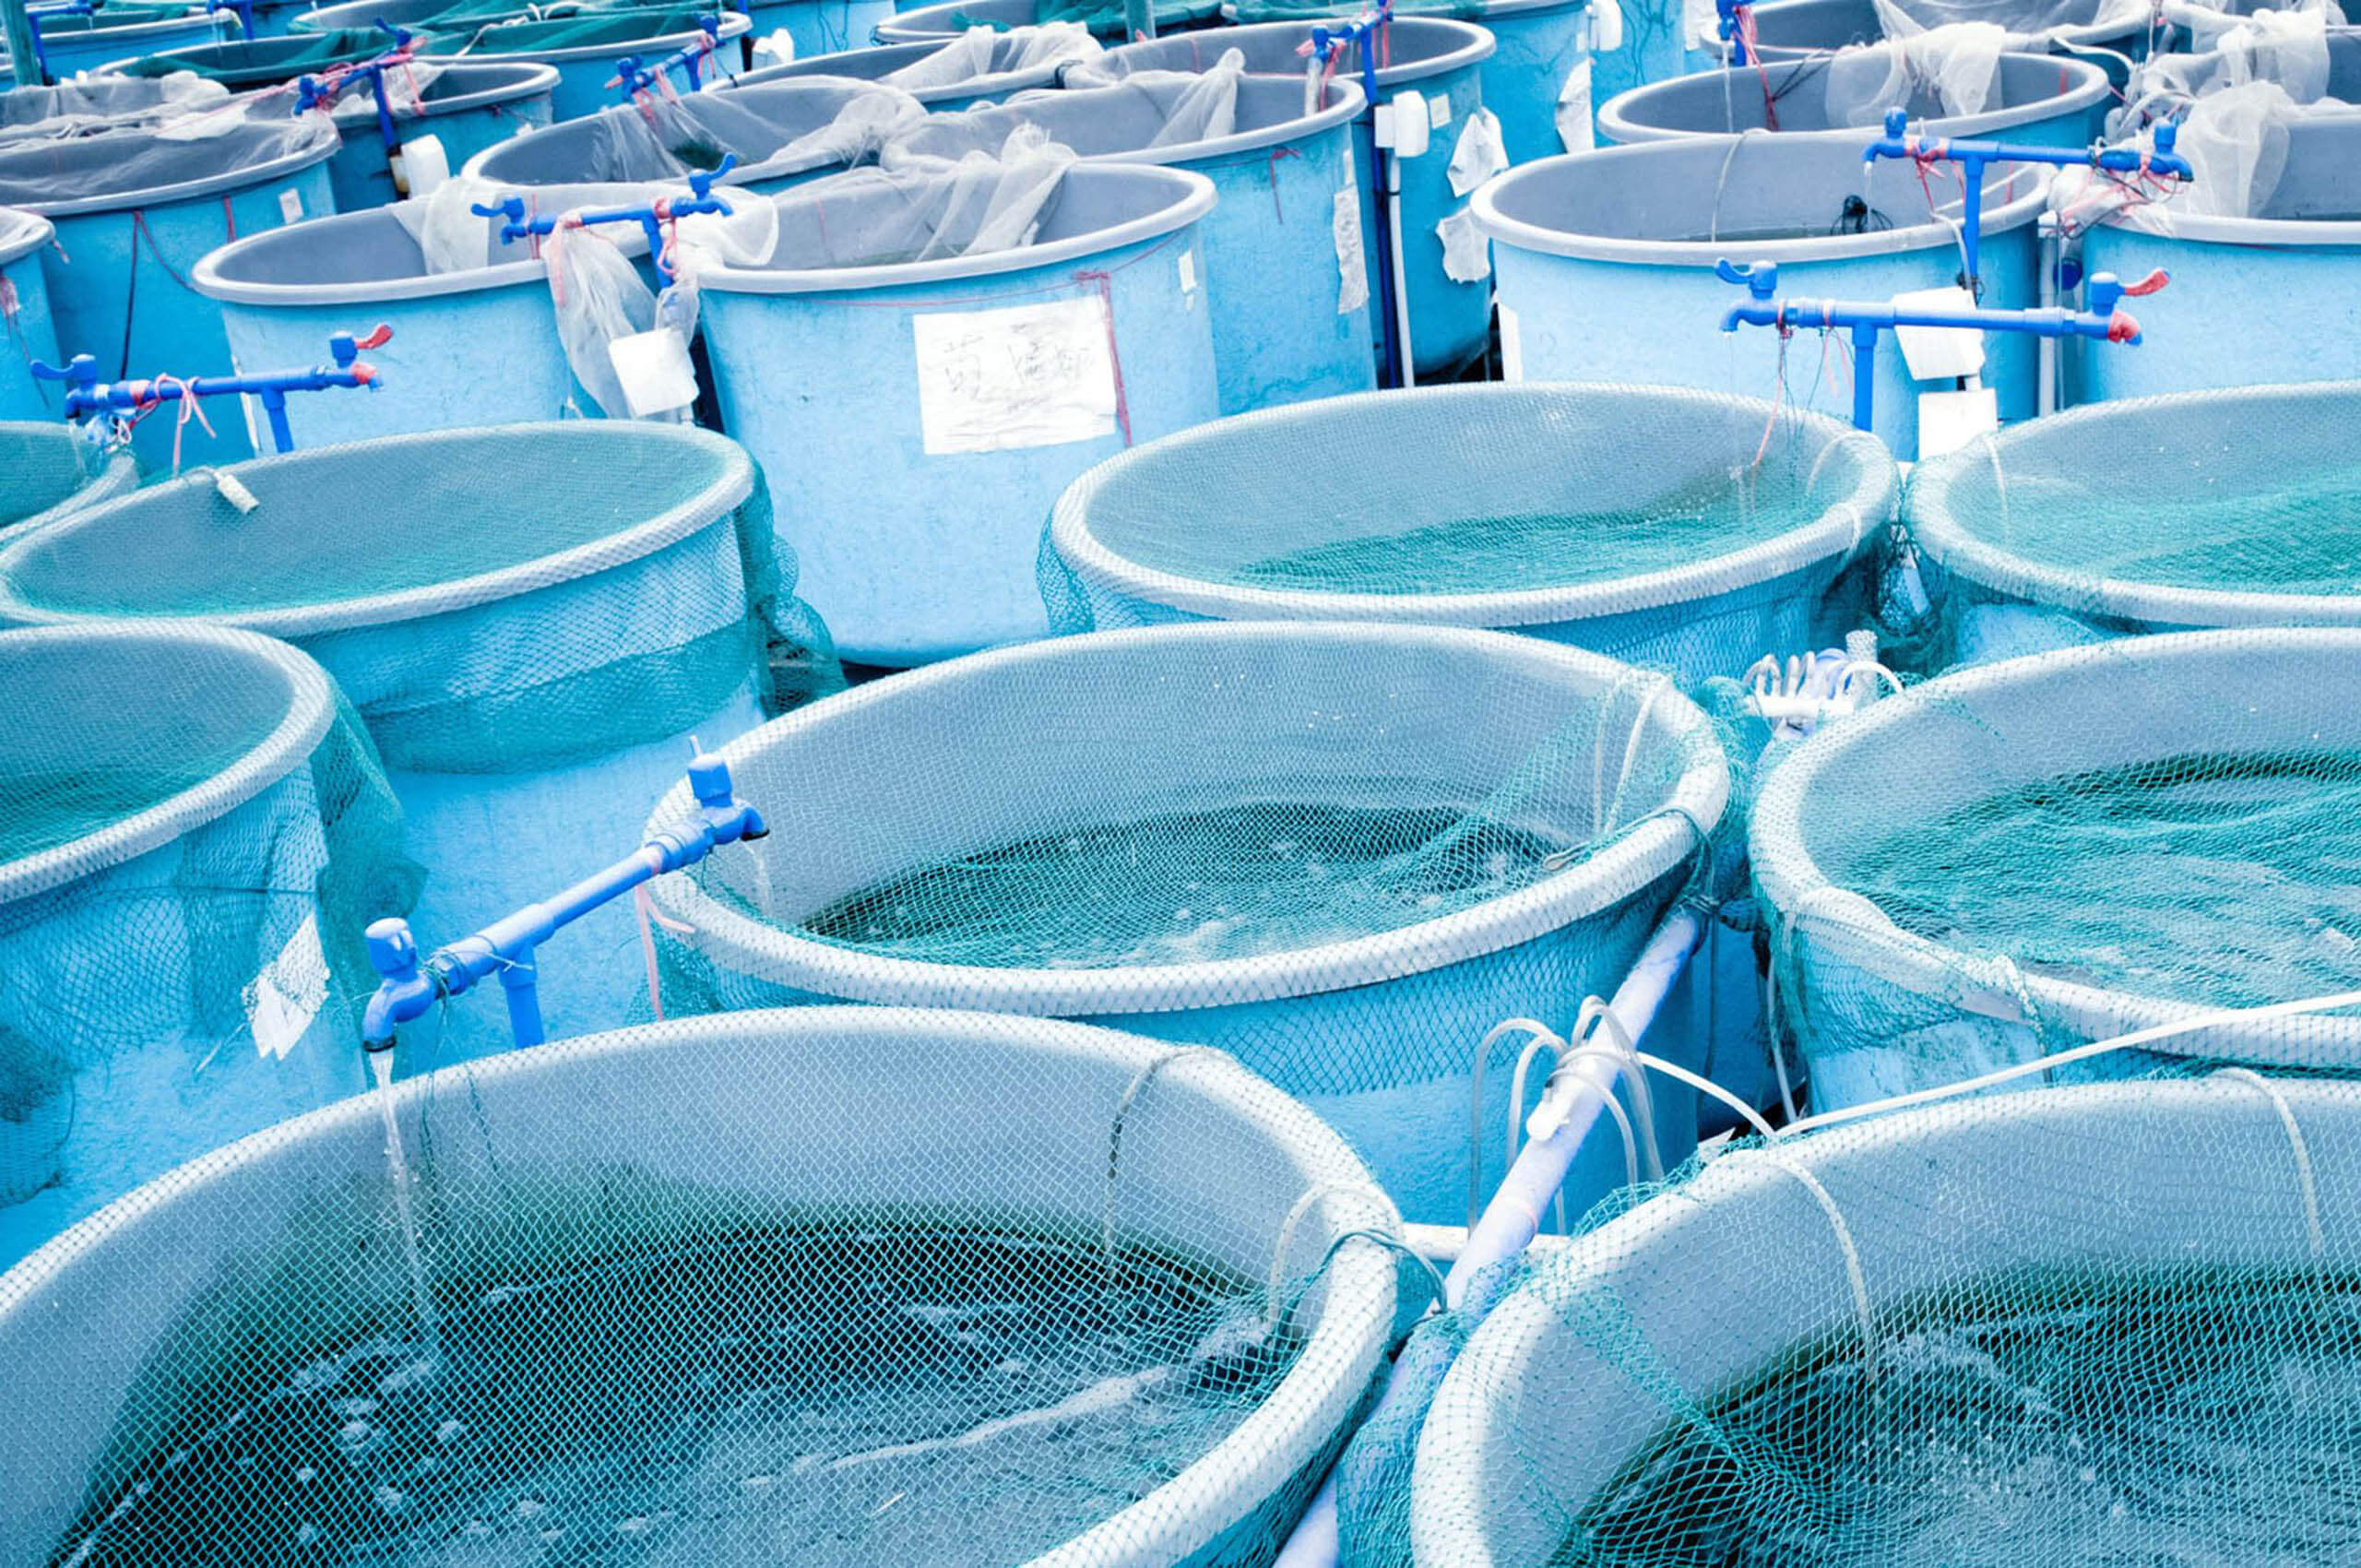 Tanks at an aquaculture facility